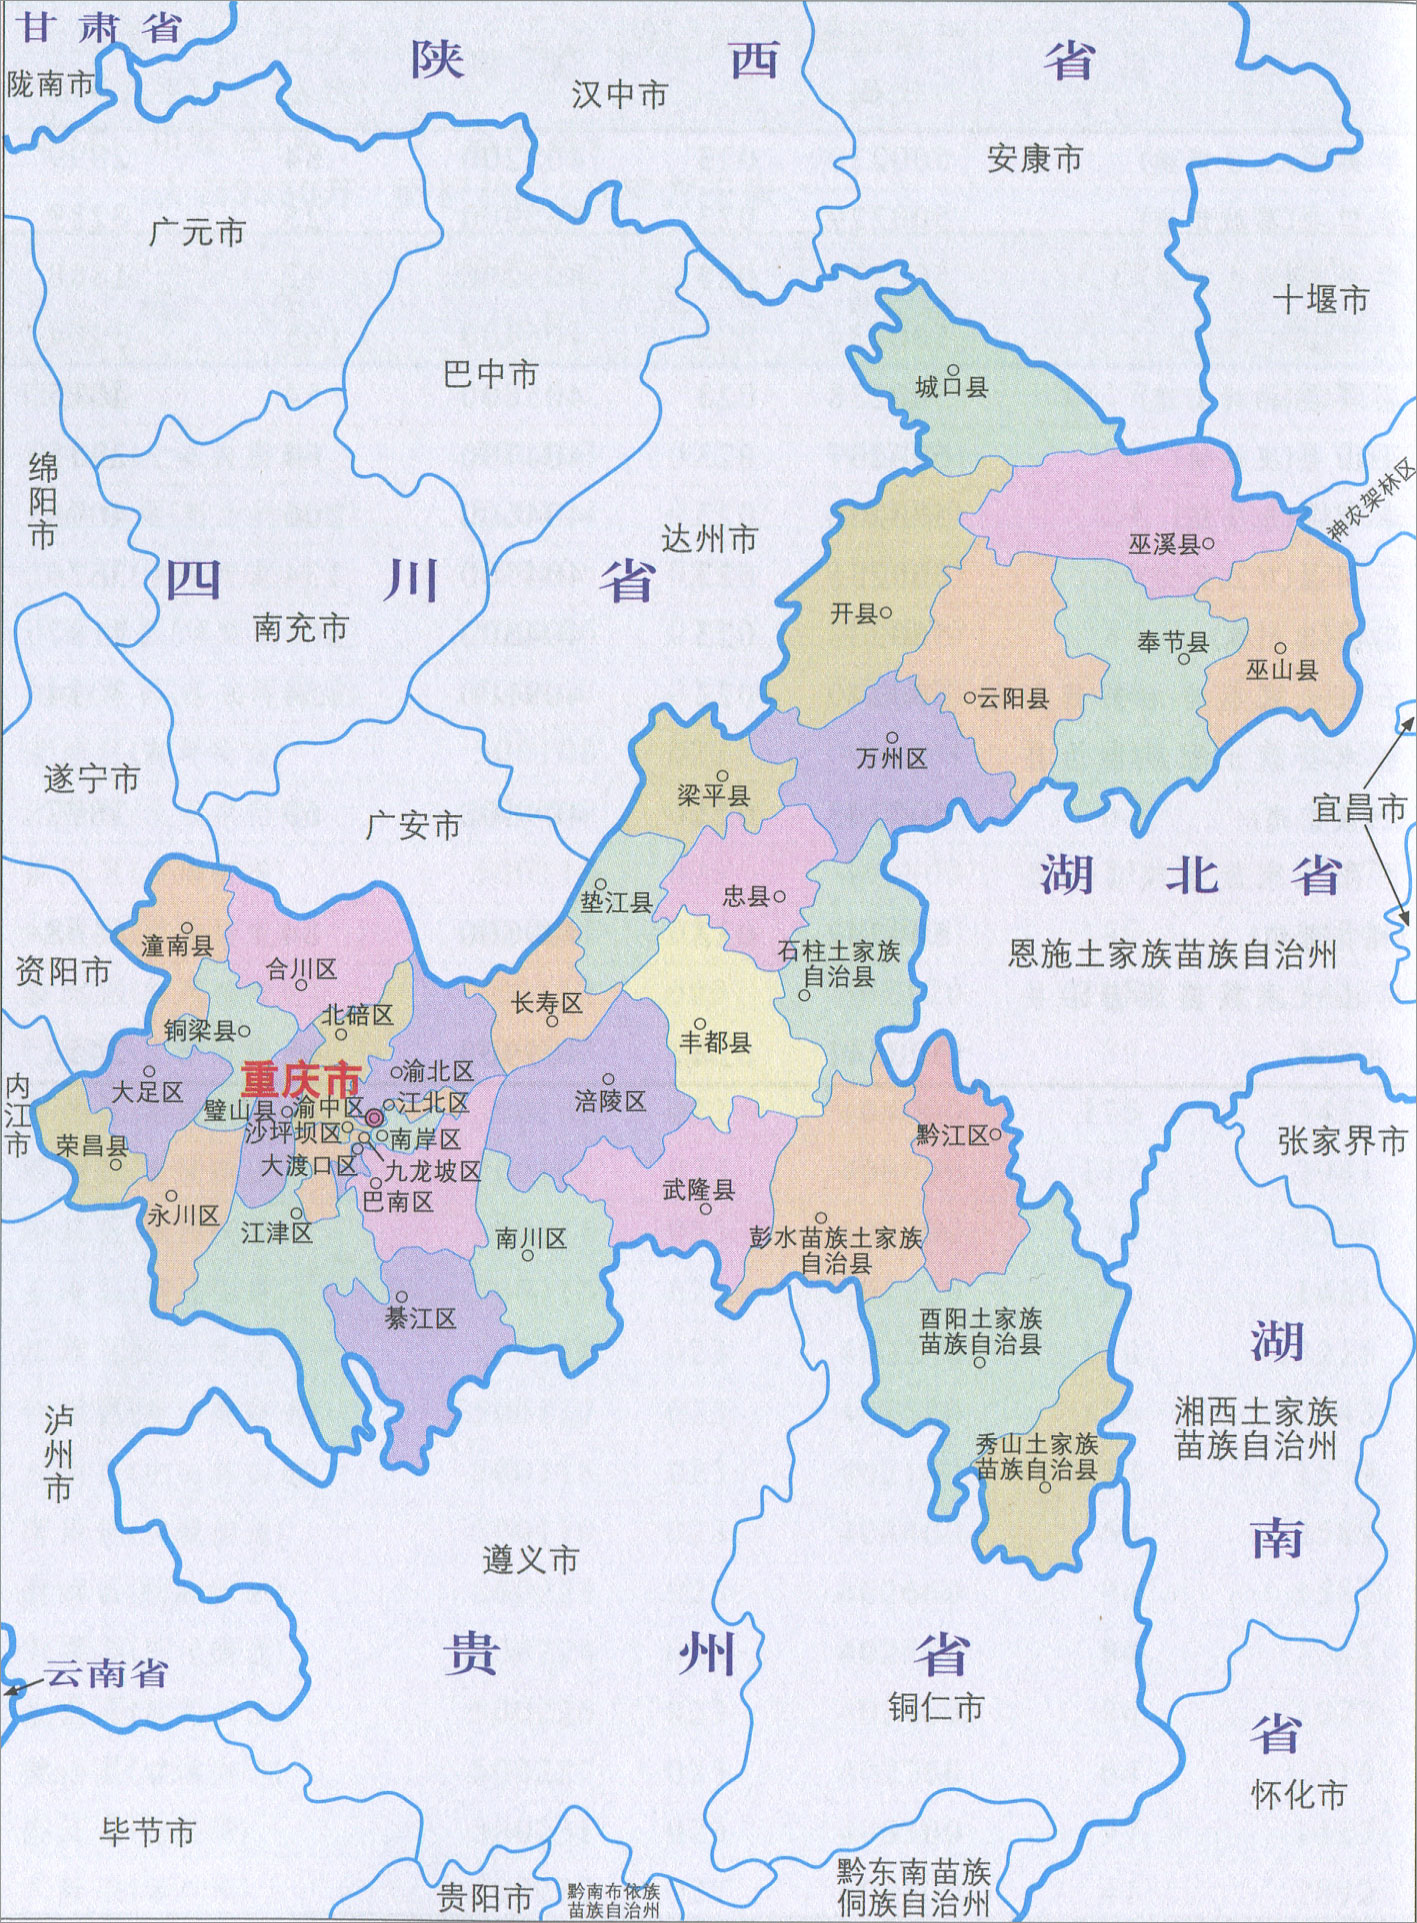 重庆区域划分